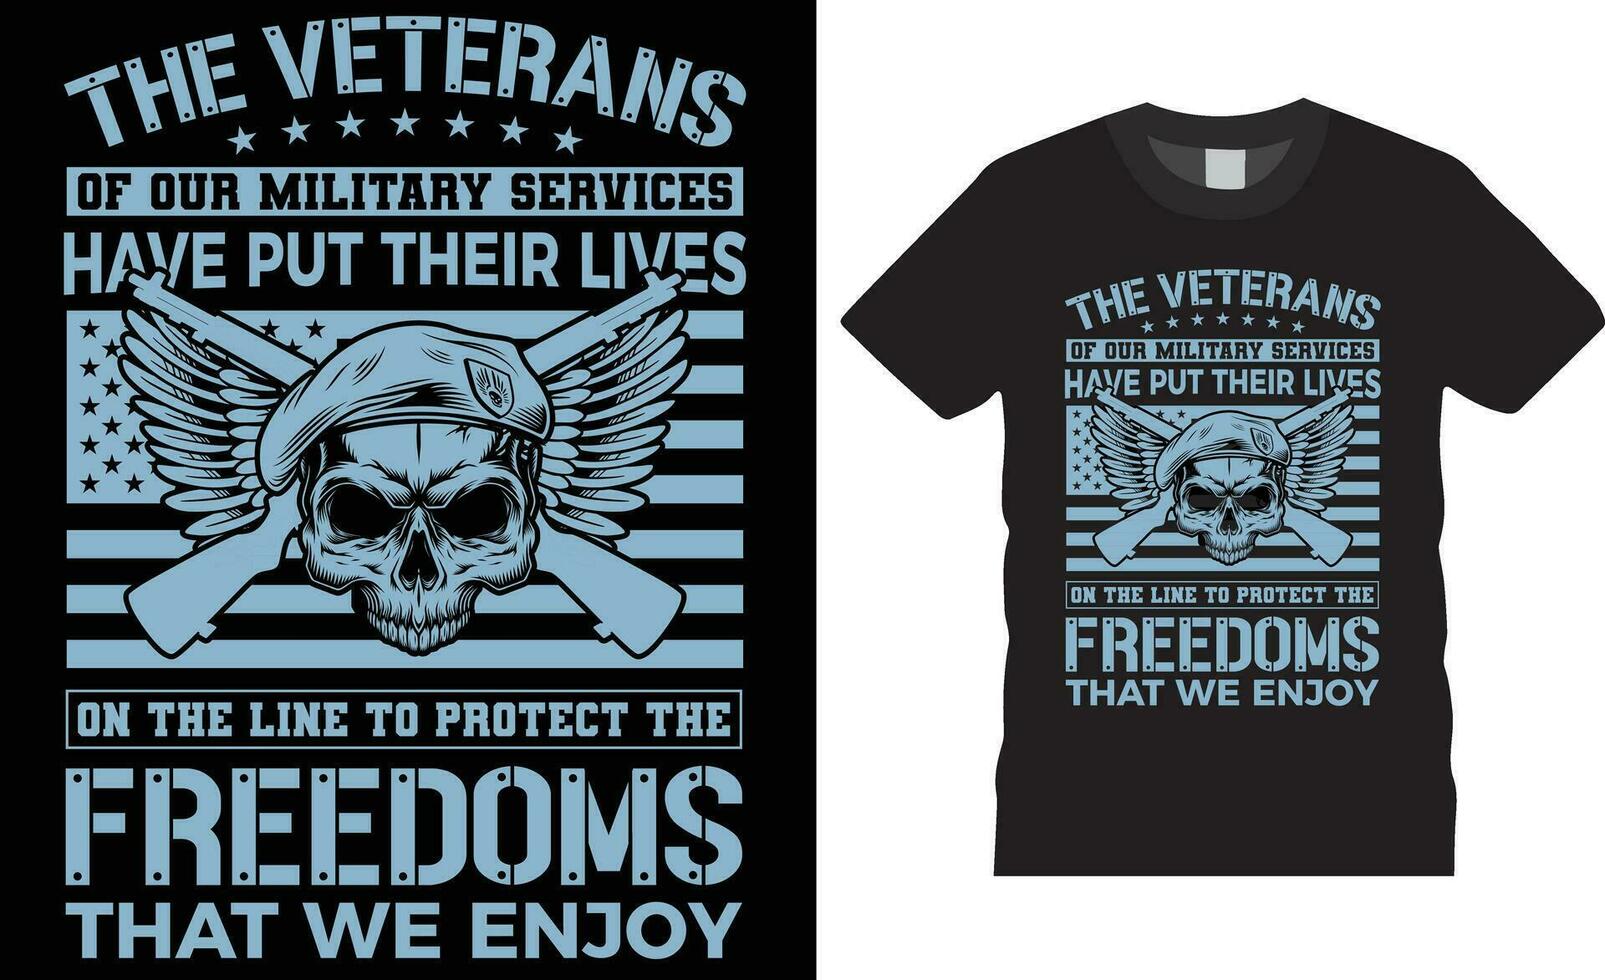 a veteranos do nosso militares Serviços ter colocar seus vidas em a linha para proteger a liberdades este nós apreciar americano veterano camiseta Projeto vetor modelo.